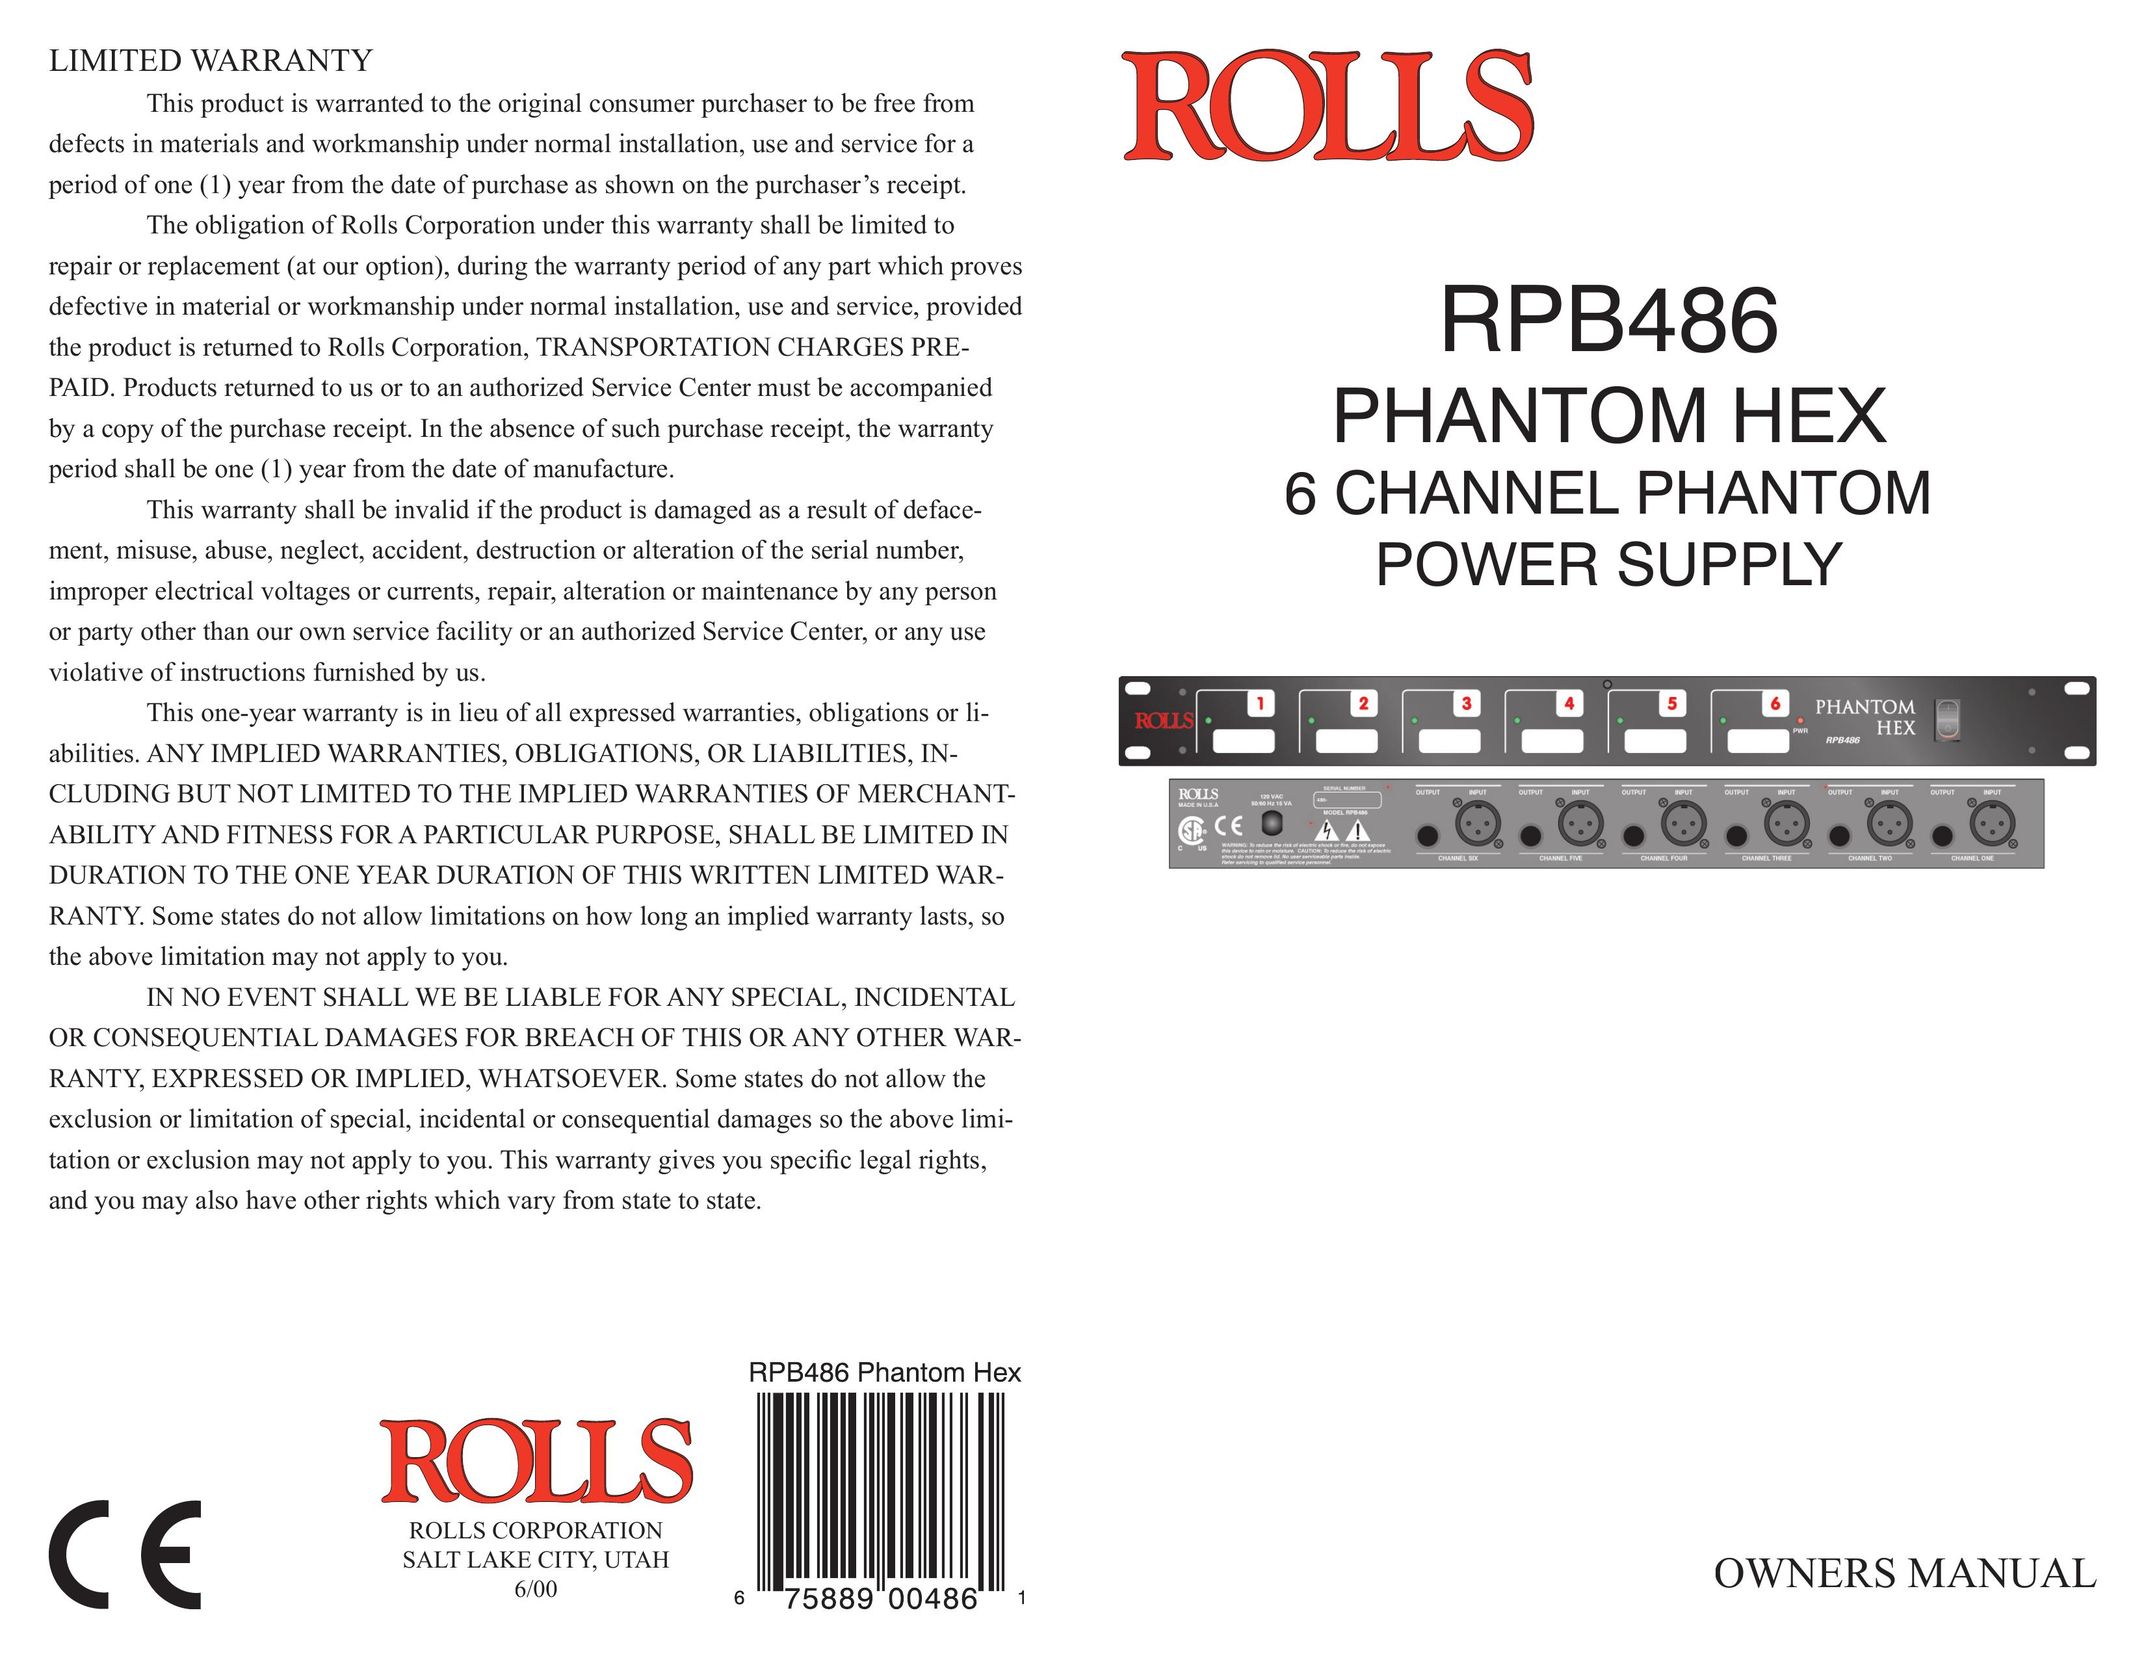 Rolls RPB486 Power Supply User Manual